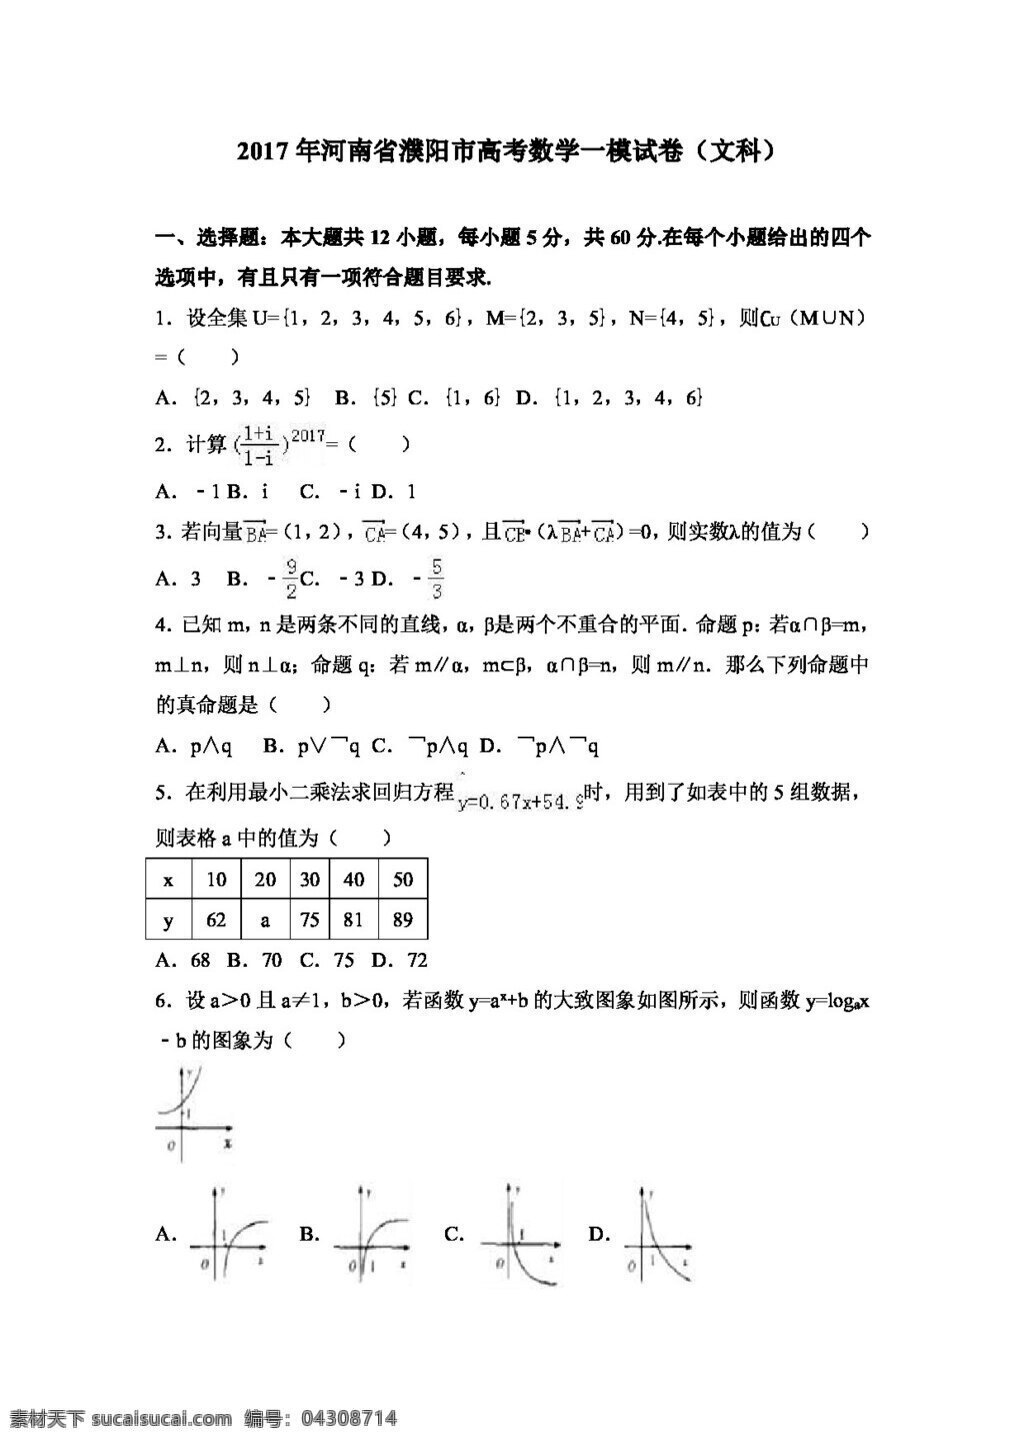 数学 人教 版 2017 年 河南省 濮阳市 高考 模 试卷 文科 高考专区 人教版